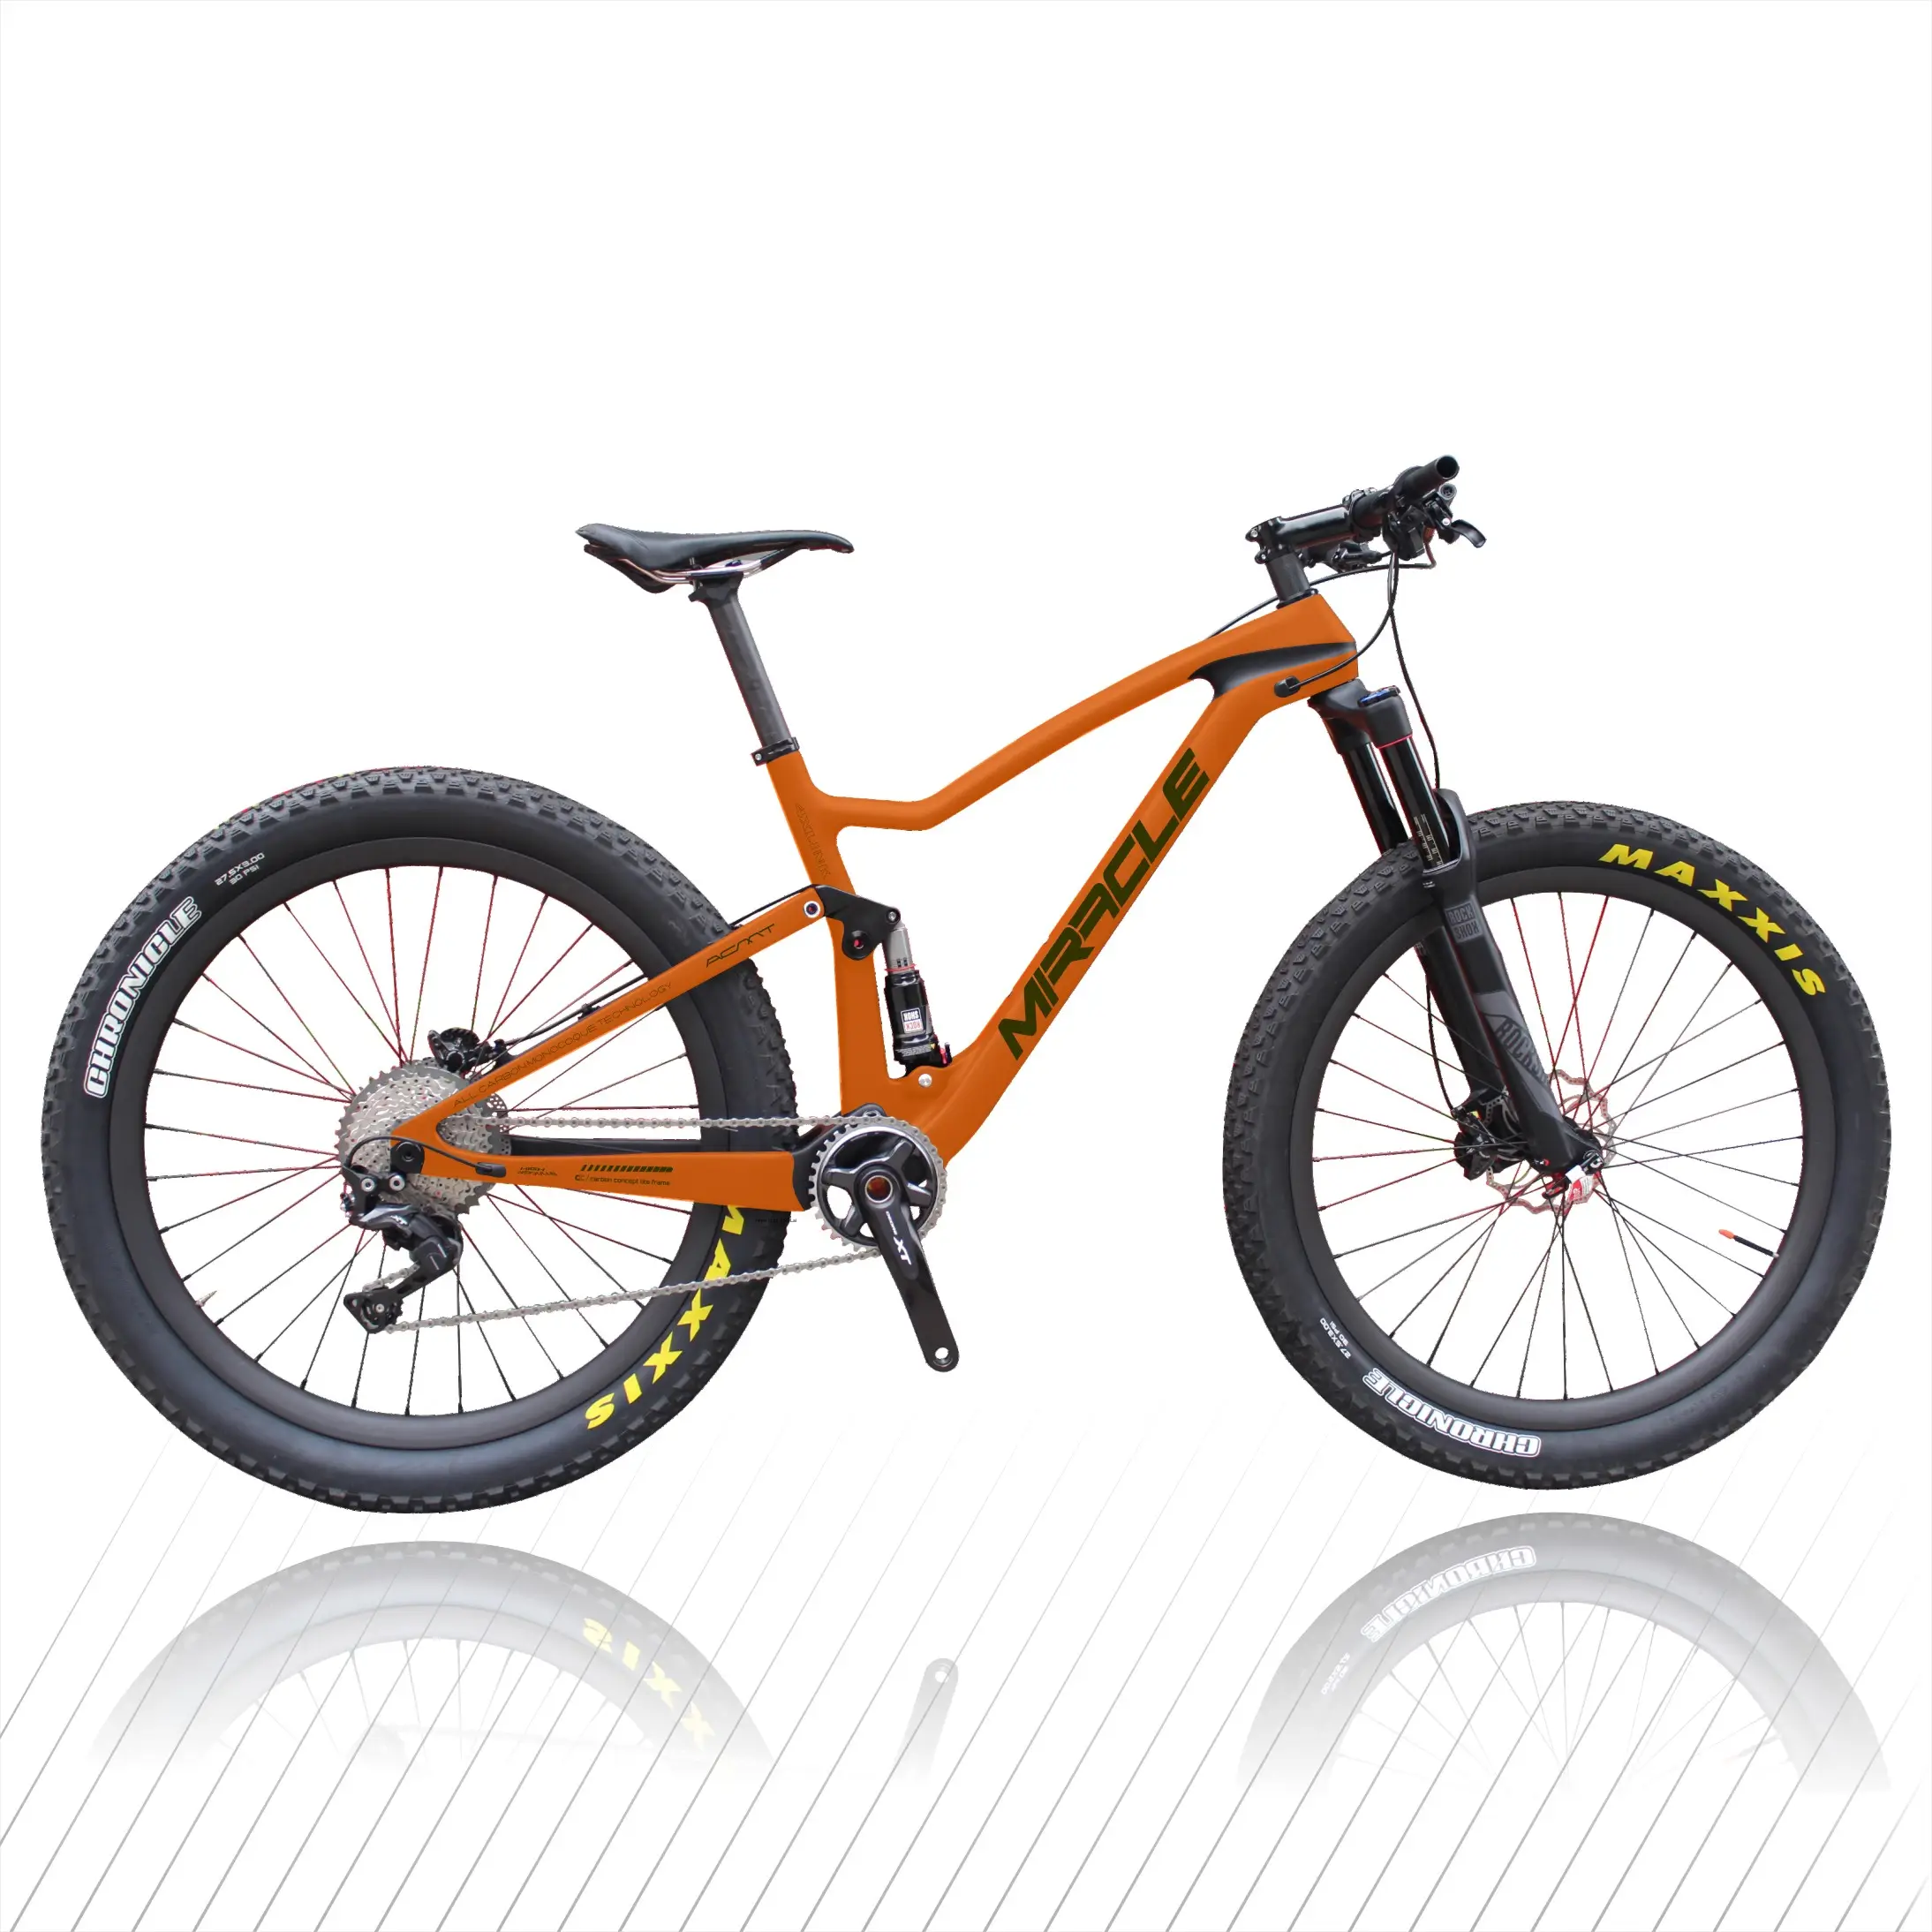 29er MTB จักรยานคาร์บอน,12*148มม. ด้านหลังผ่านเพลาคาร์บอนเฟรมจักรยานเสือภูเขา,คาร์บอนร้อนสมบูรณ์จักรยานเสือภูเขา